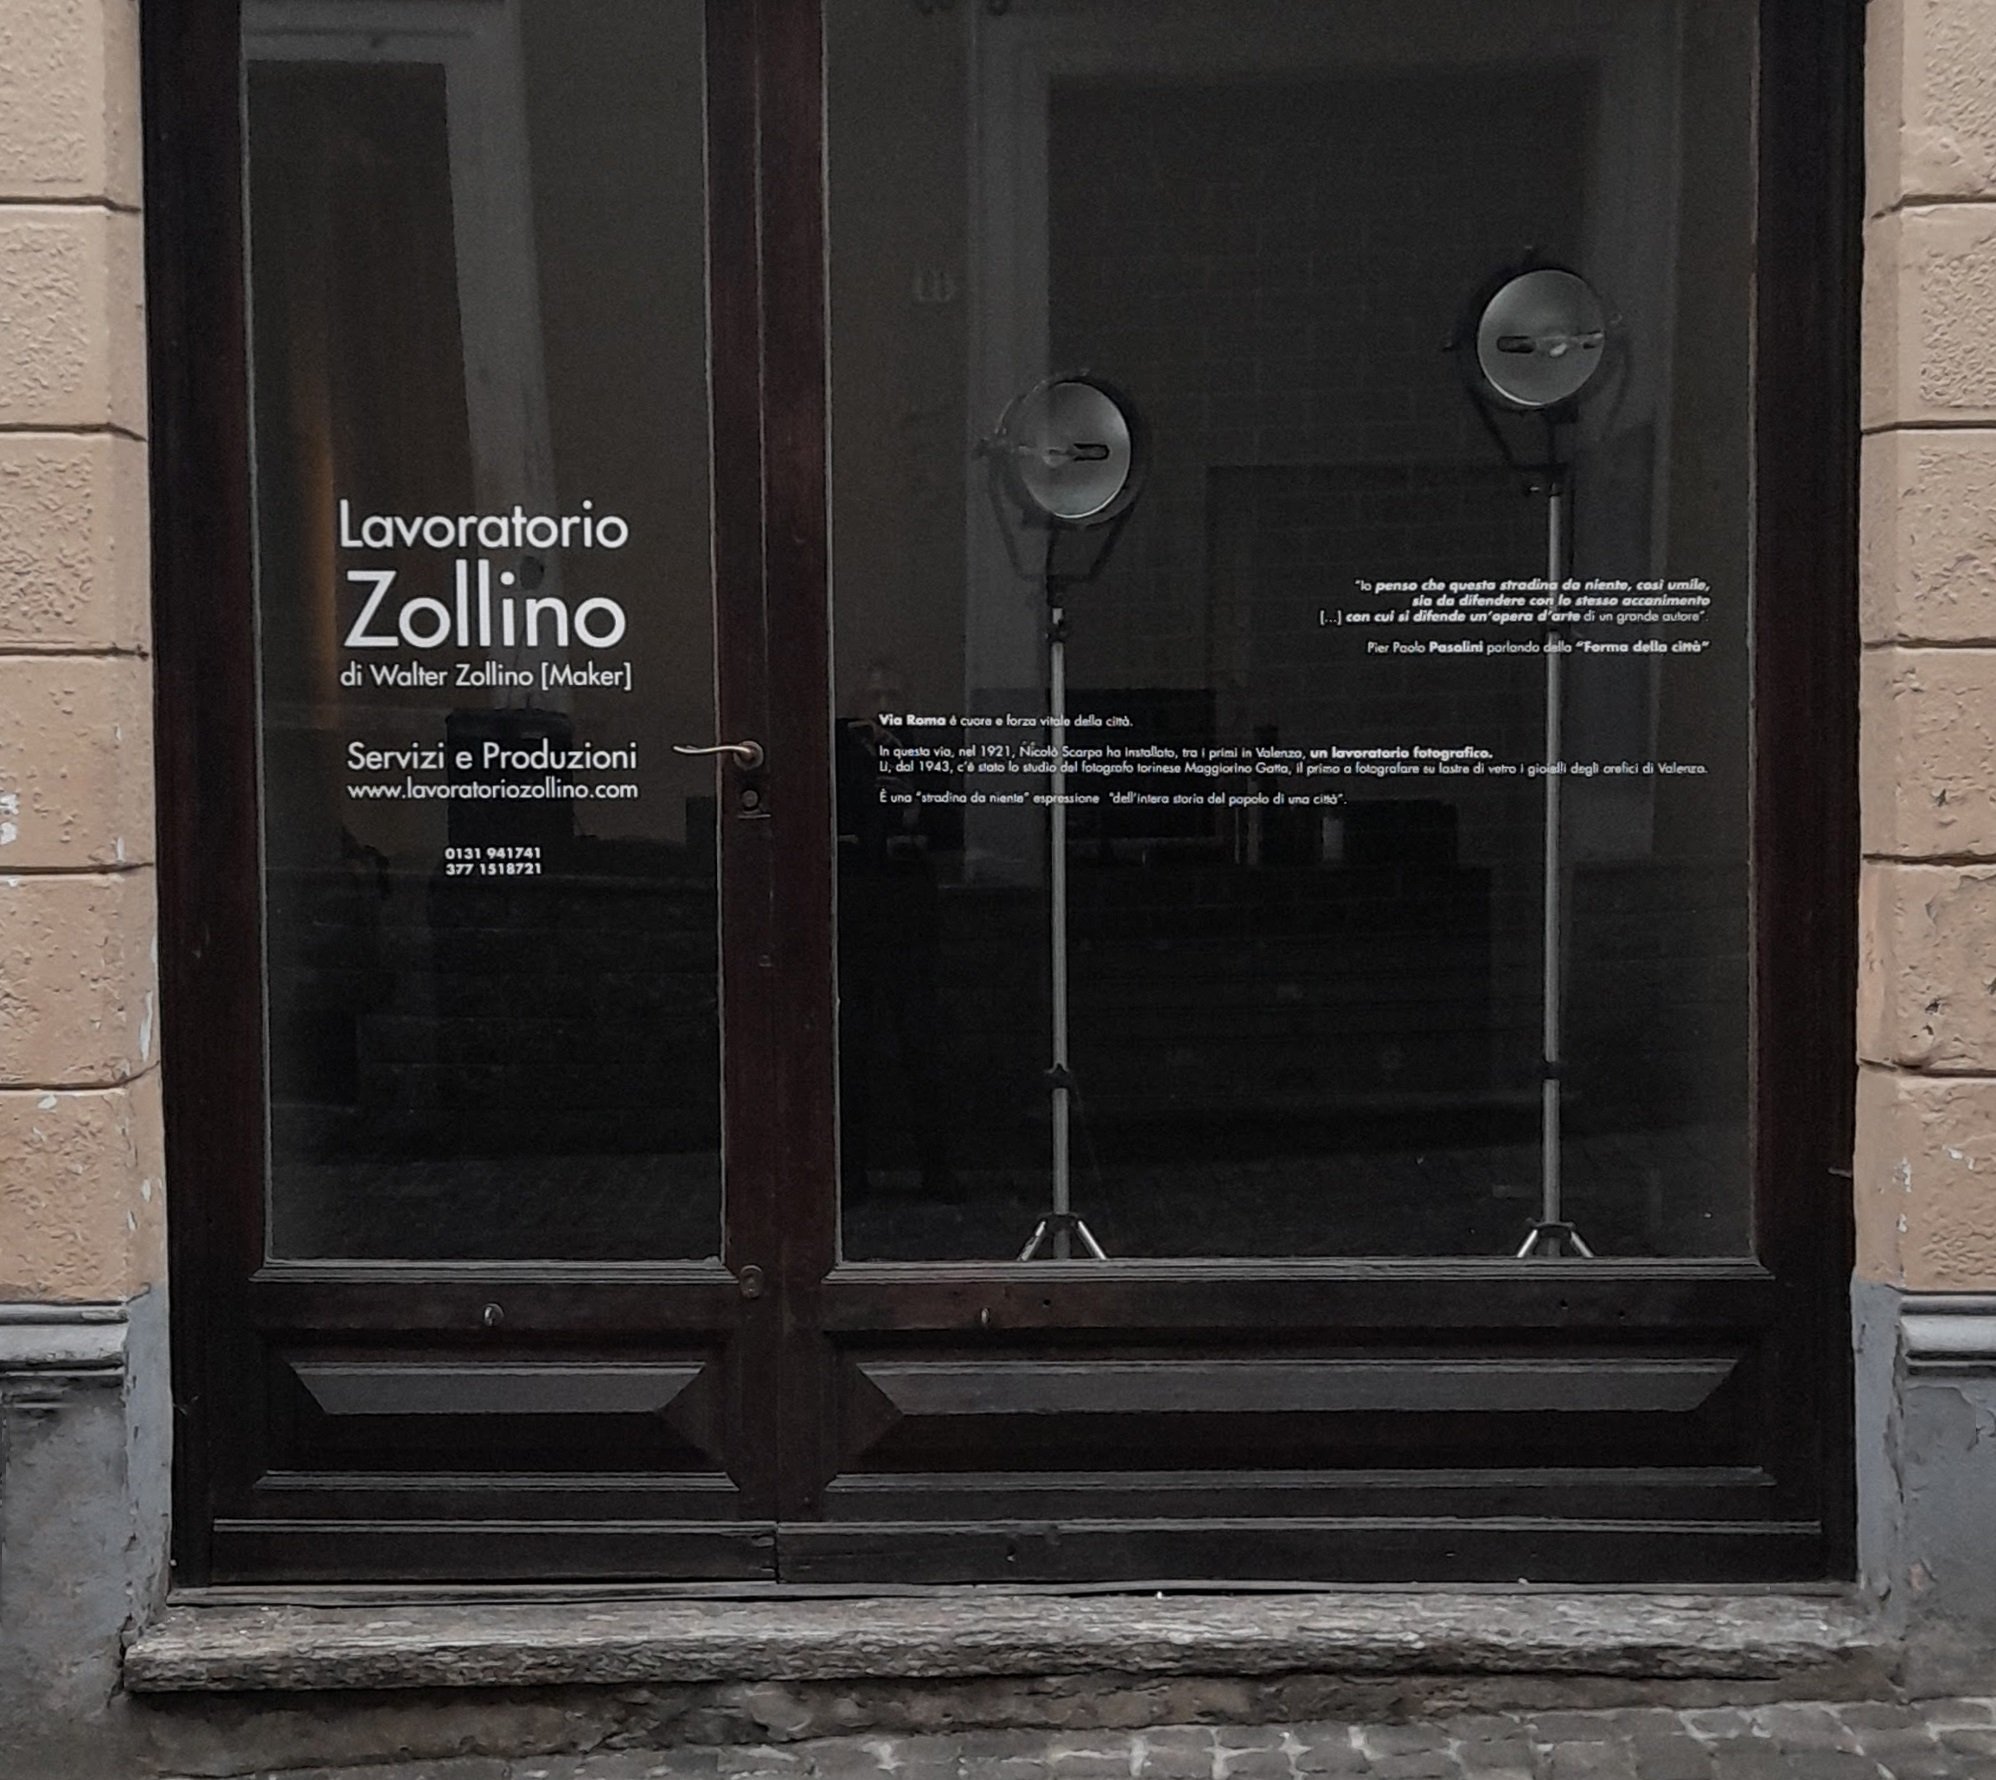 Le vetrine dei negozi come pagine di storia e abbecedari dei valori: l’idea di Walter Zollino